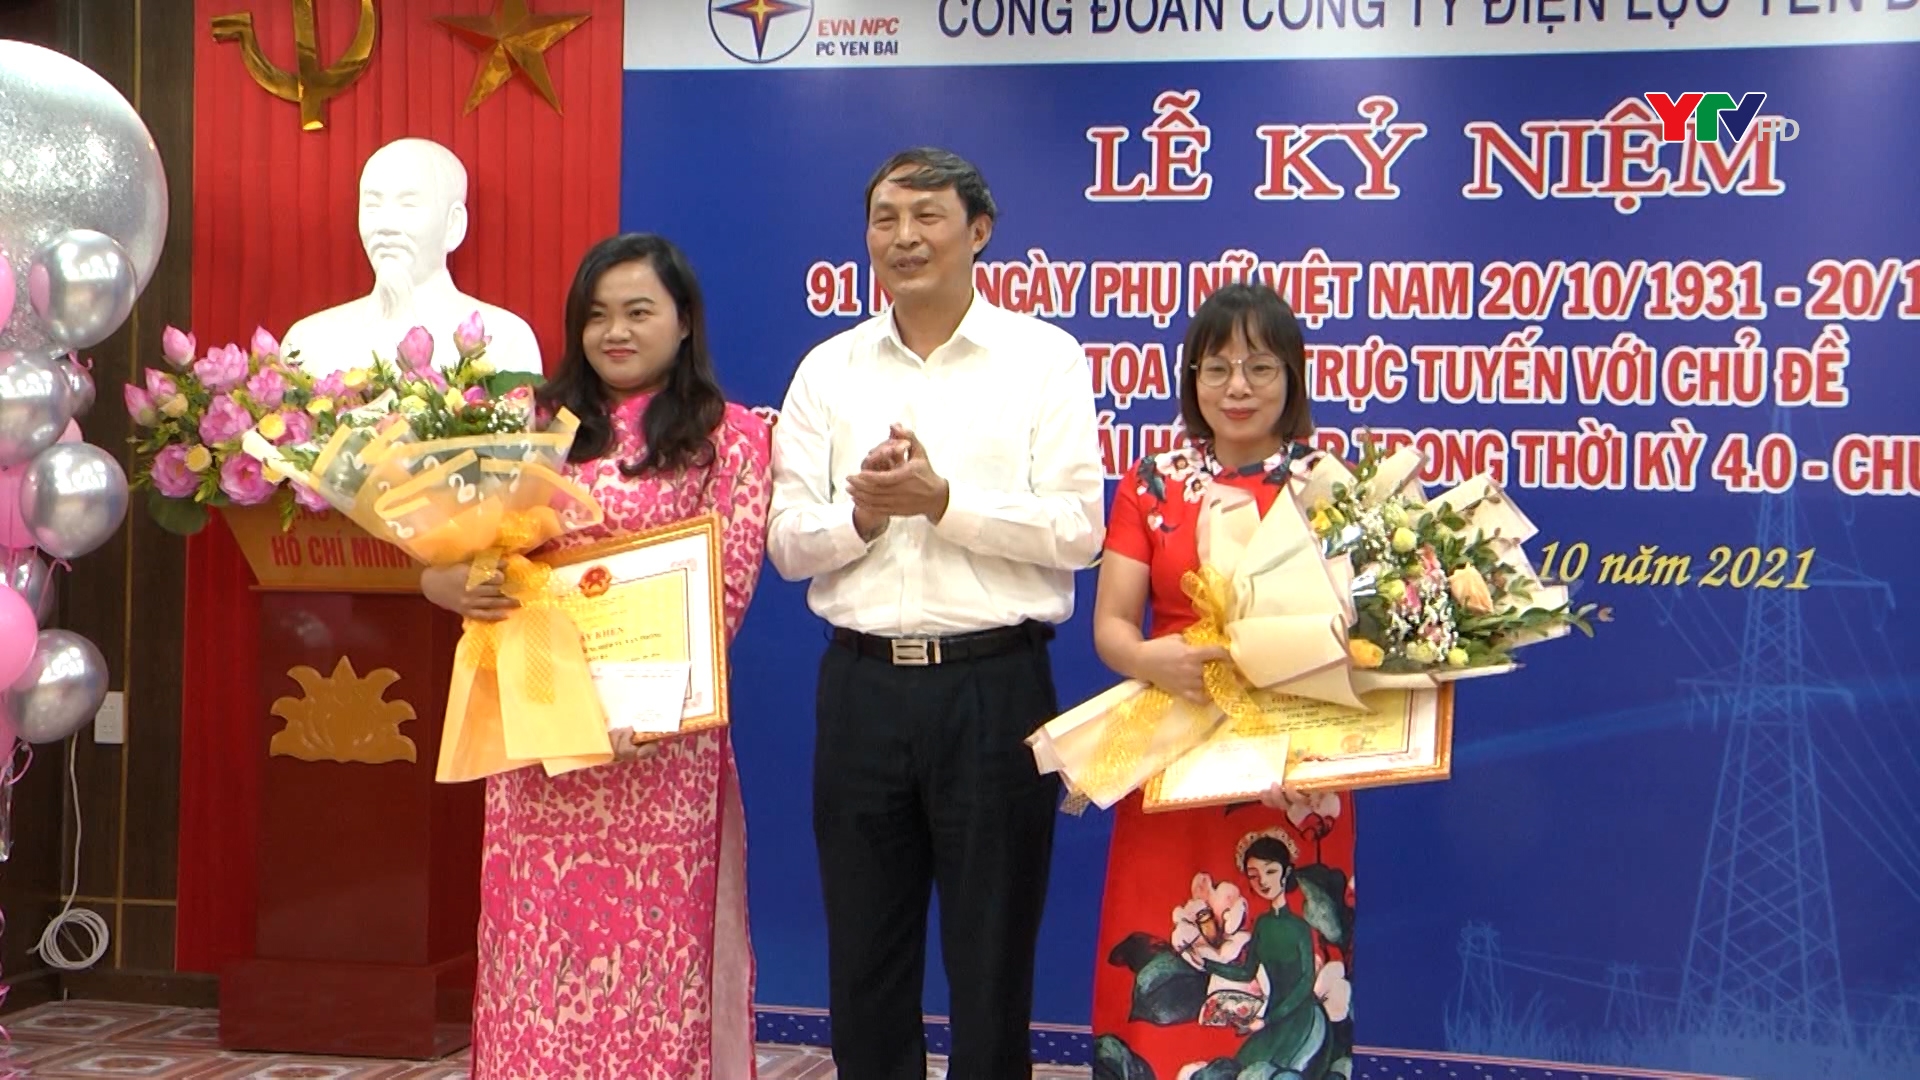 Công ty Điện lực Yên Bái kỷ niệm 91 năm ngày thành lập Hội Liên hiệp Phụ nữ Việt Nam